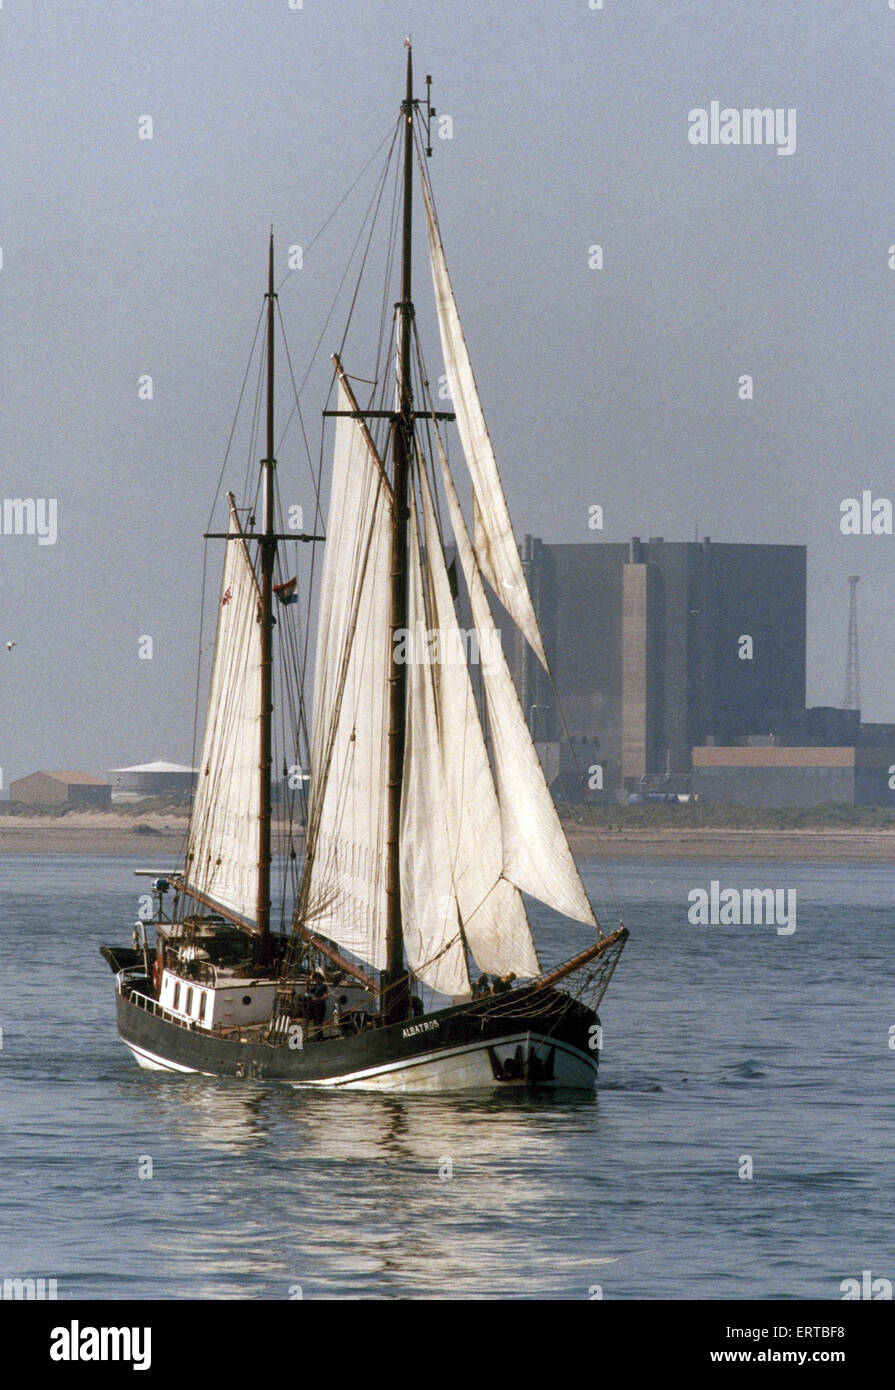 Le mât double restauré à la Péniche hollandaise Albatros vu ici de quitter le fleuve Tees après réception d'une cargaison d'engrais à destination de Norfolk. 7 Août 1990 Banque D'Images